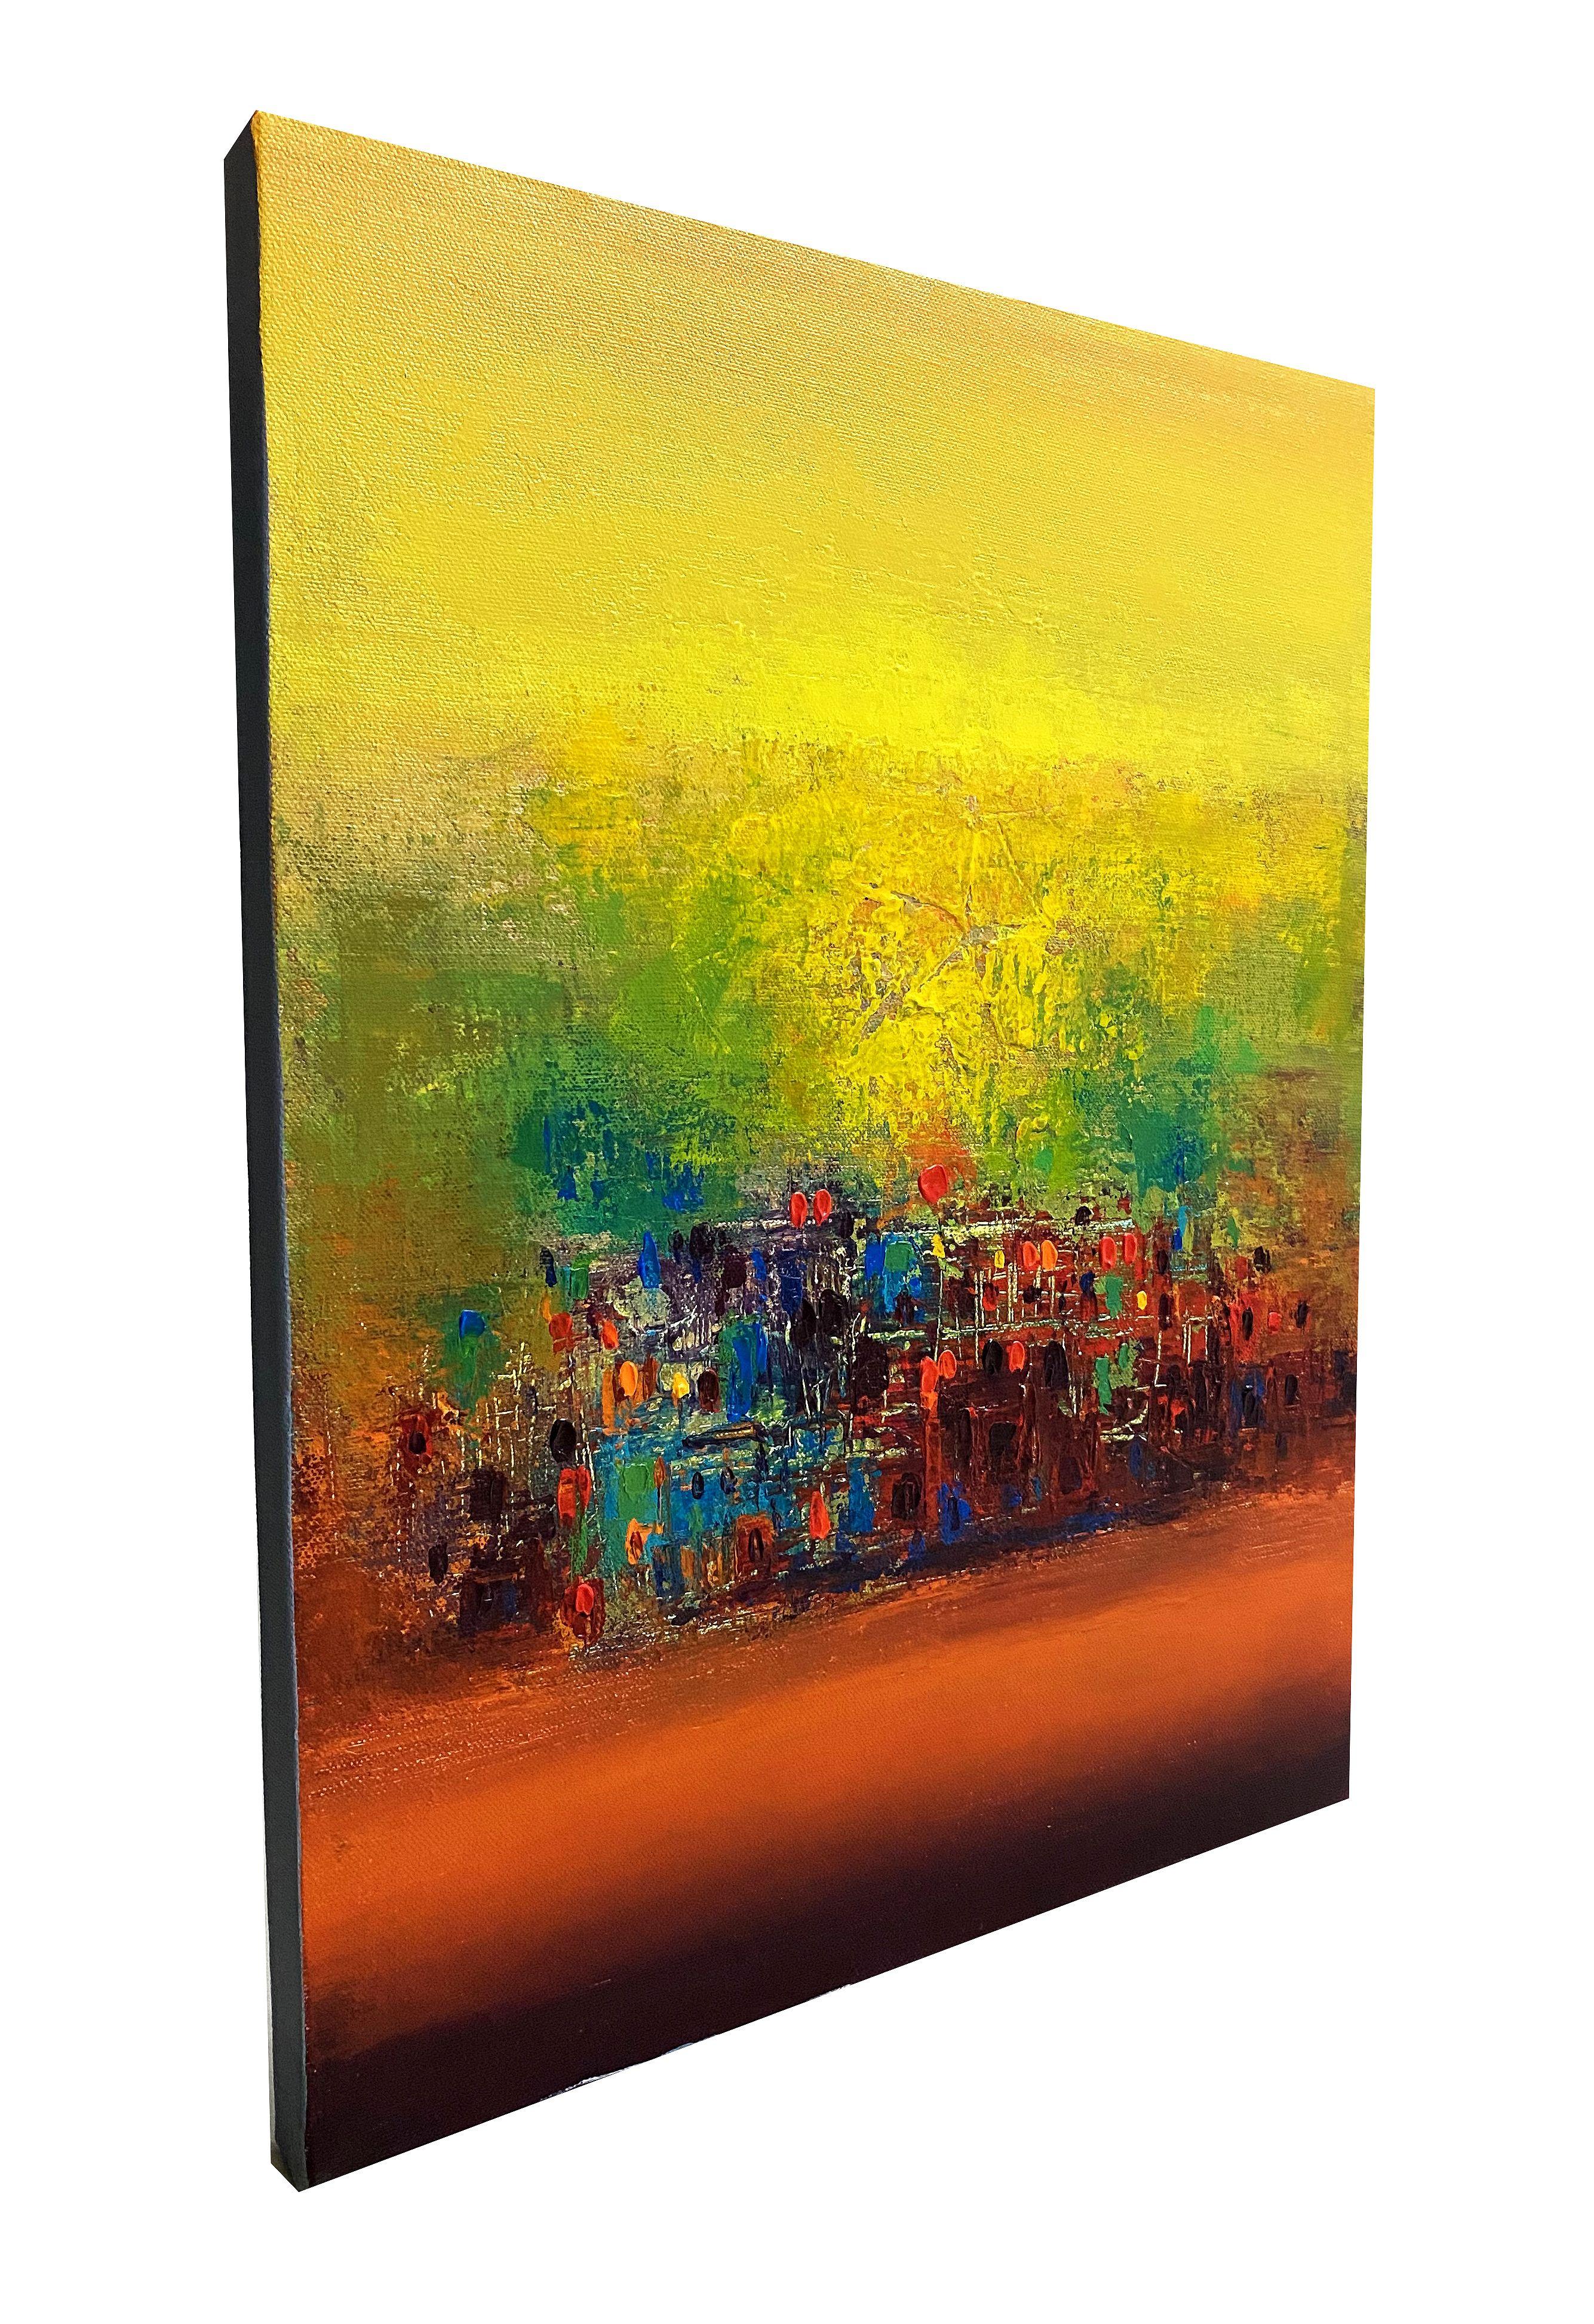 S 20 coucher de soleil, peinture, acrylique sur toile - Expressionnisme abstrait Painting par Nivas Kanhere